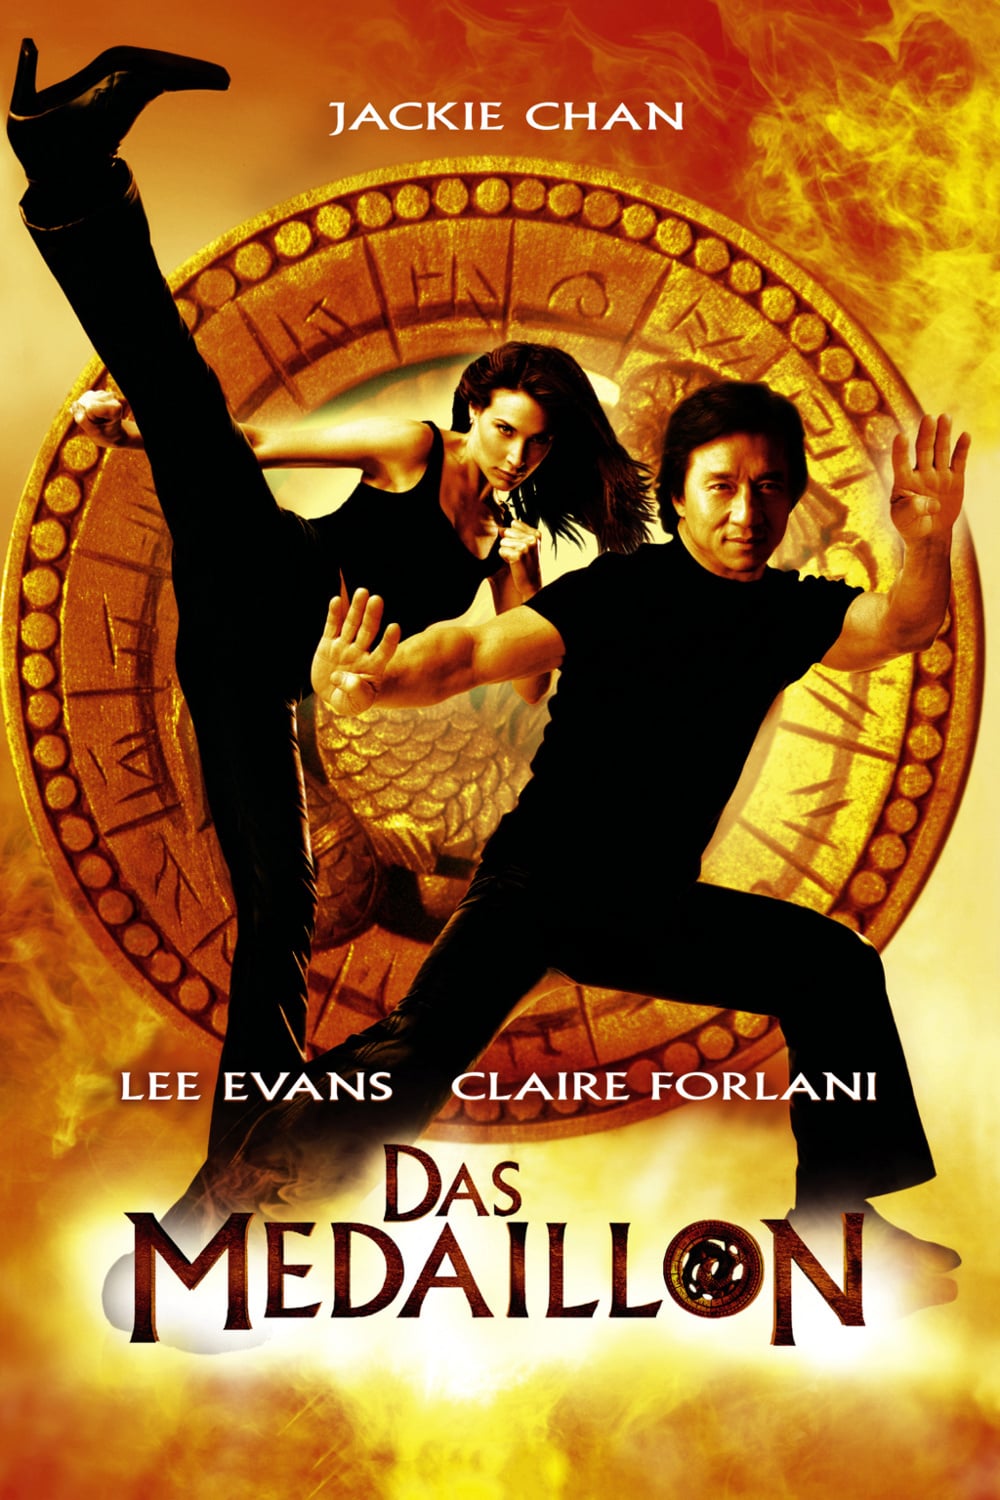 Plakat von "Das Medaillon"